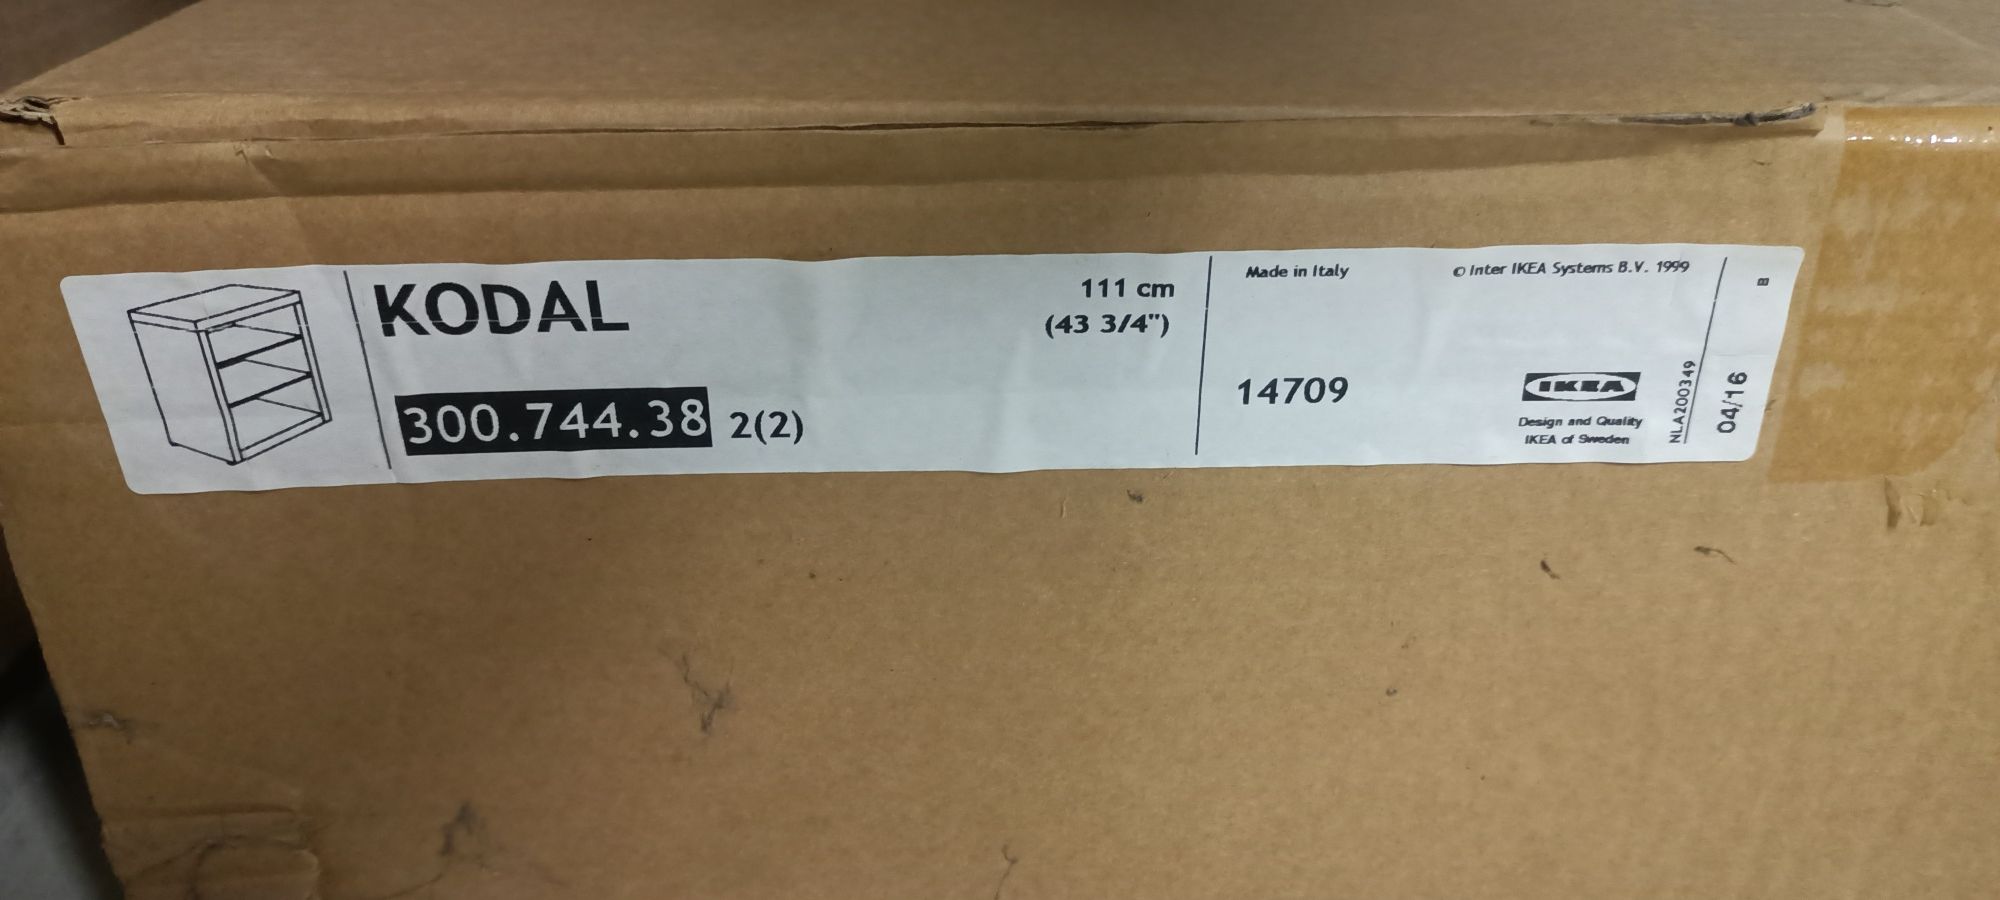 5x Ikea regał głęboki Kodal 111x111x60 nowy